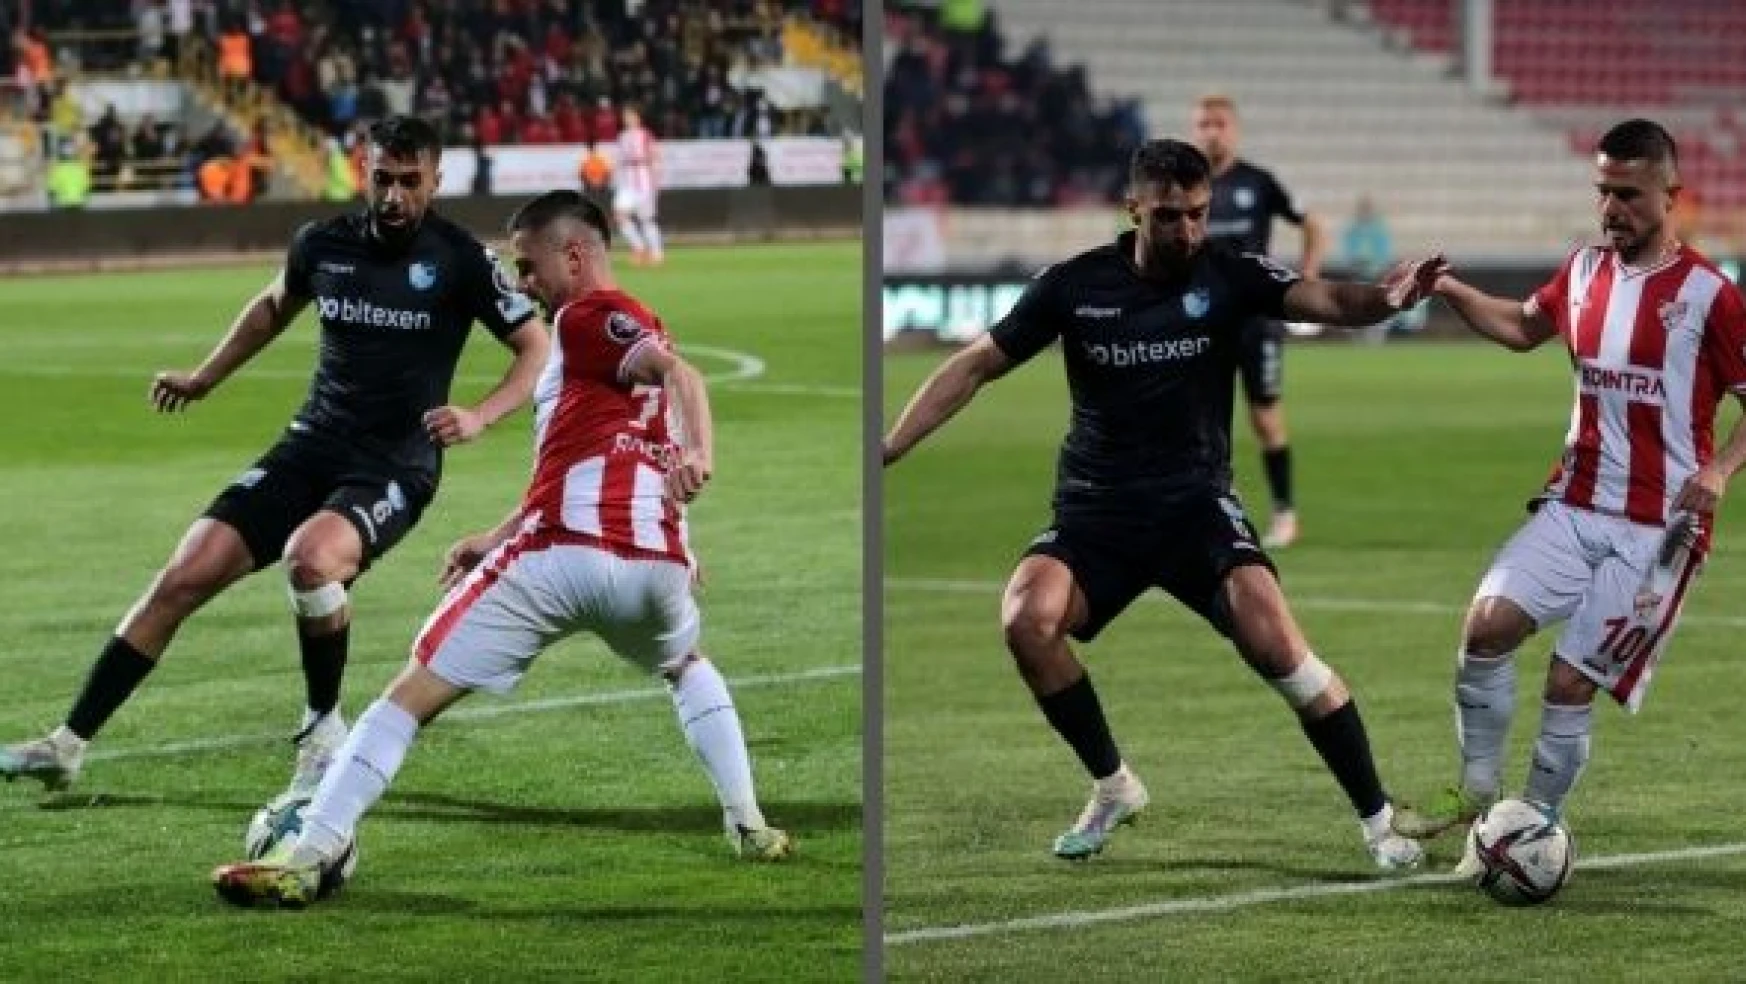 Beypiliç Boluspor: 0 - Büyükşehir Belediye Erzurumspor: 2